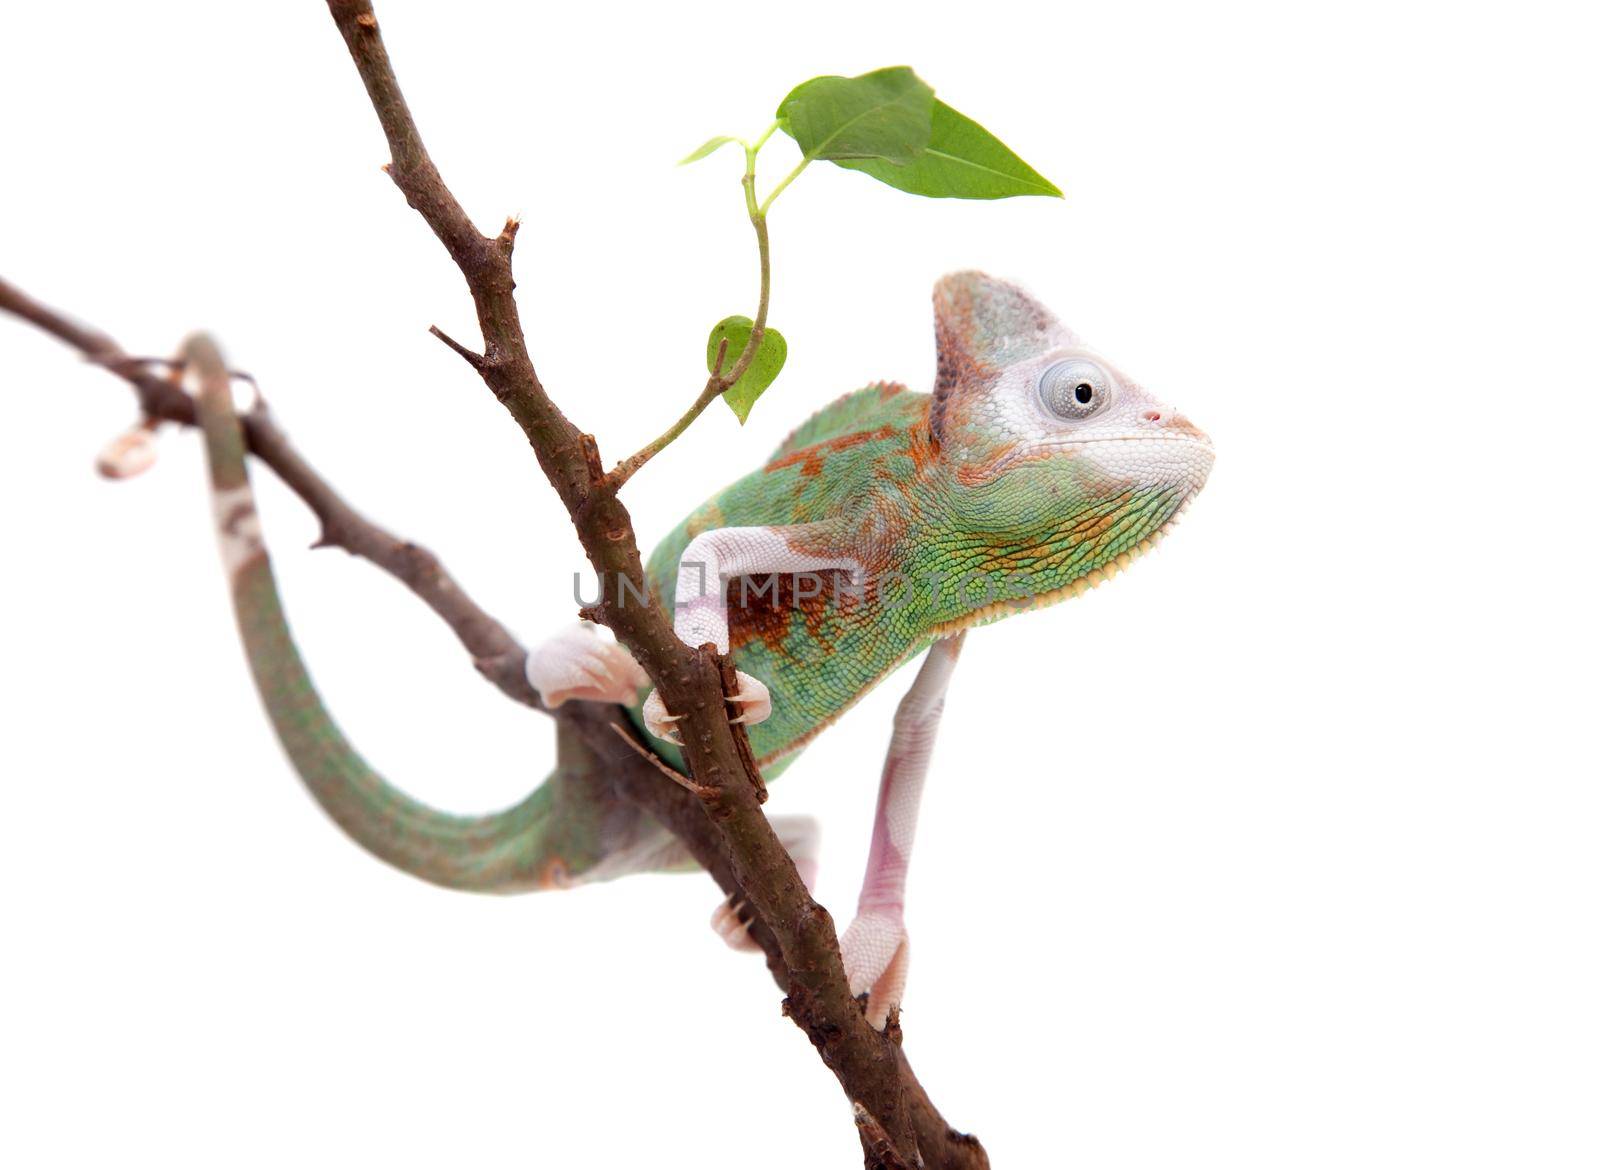 The veiled chameleon piebald, Chamaeleo calyptratus, female isolated on white background